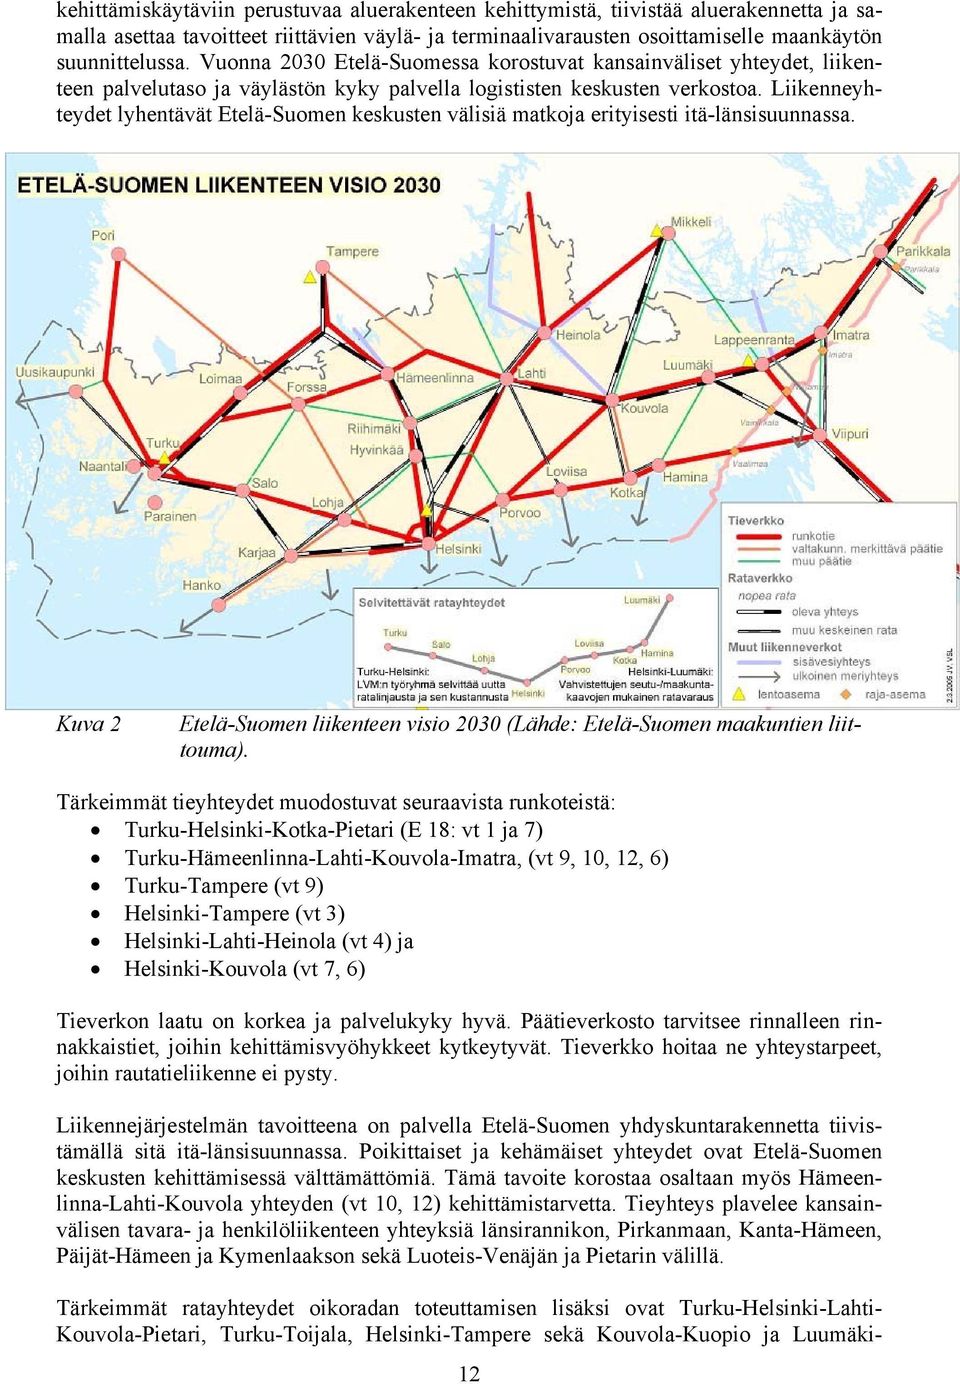 Liikenneyhteydet lyhentävät Etelä-Suomen keskusten välisiä matkoja erityisesti itä-länsisuunnassa. Kuva 2 Etelä-Suomen liikenteen visio 2030 (Lähde: Etelä-Suomen maakuntien liittouma).